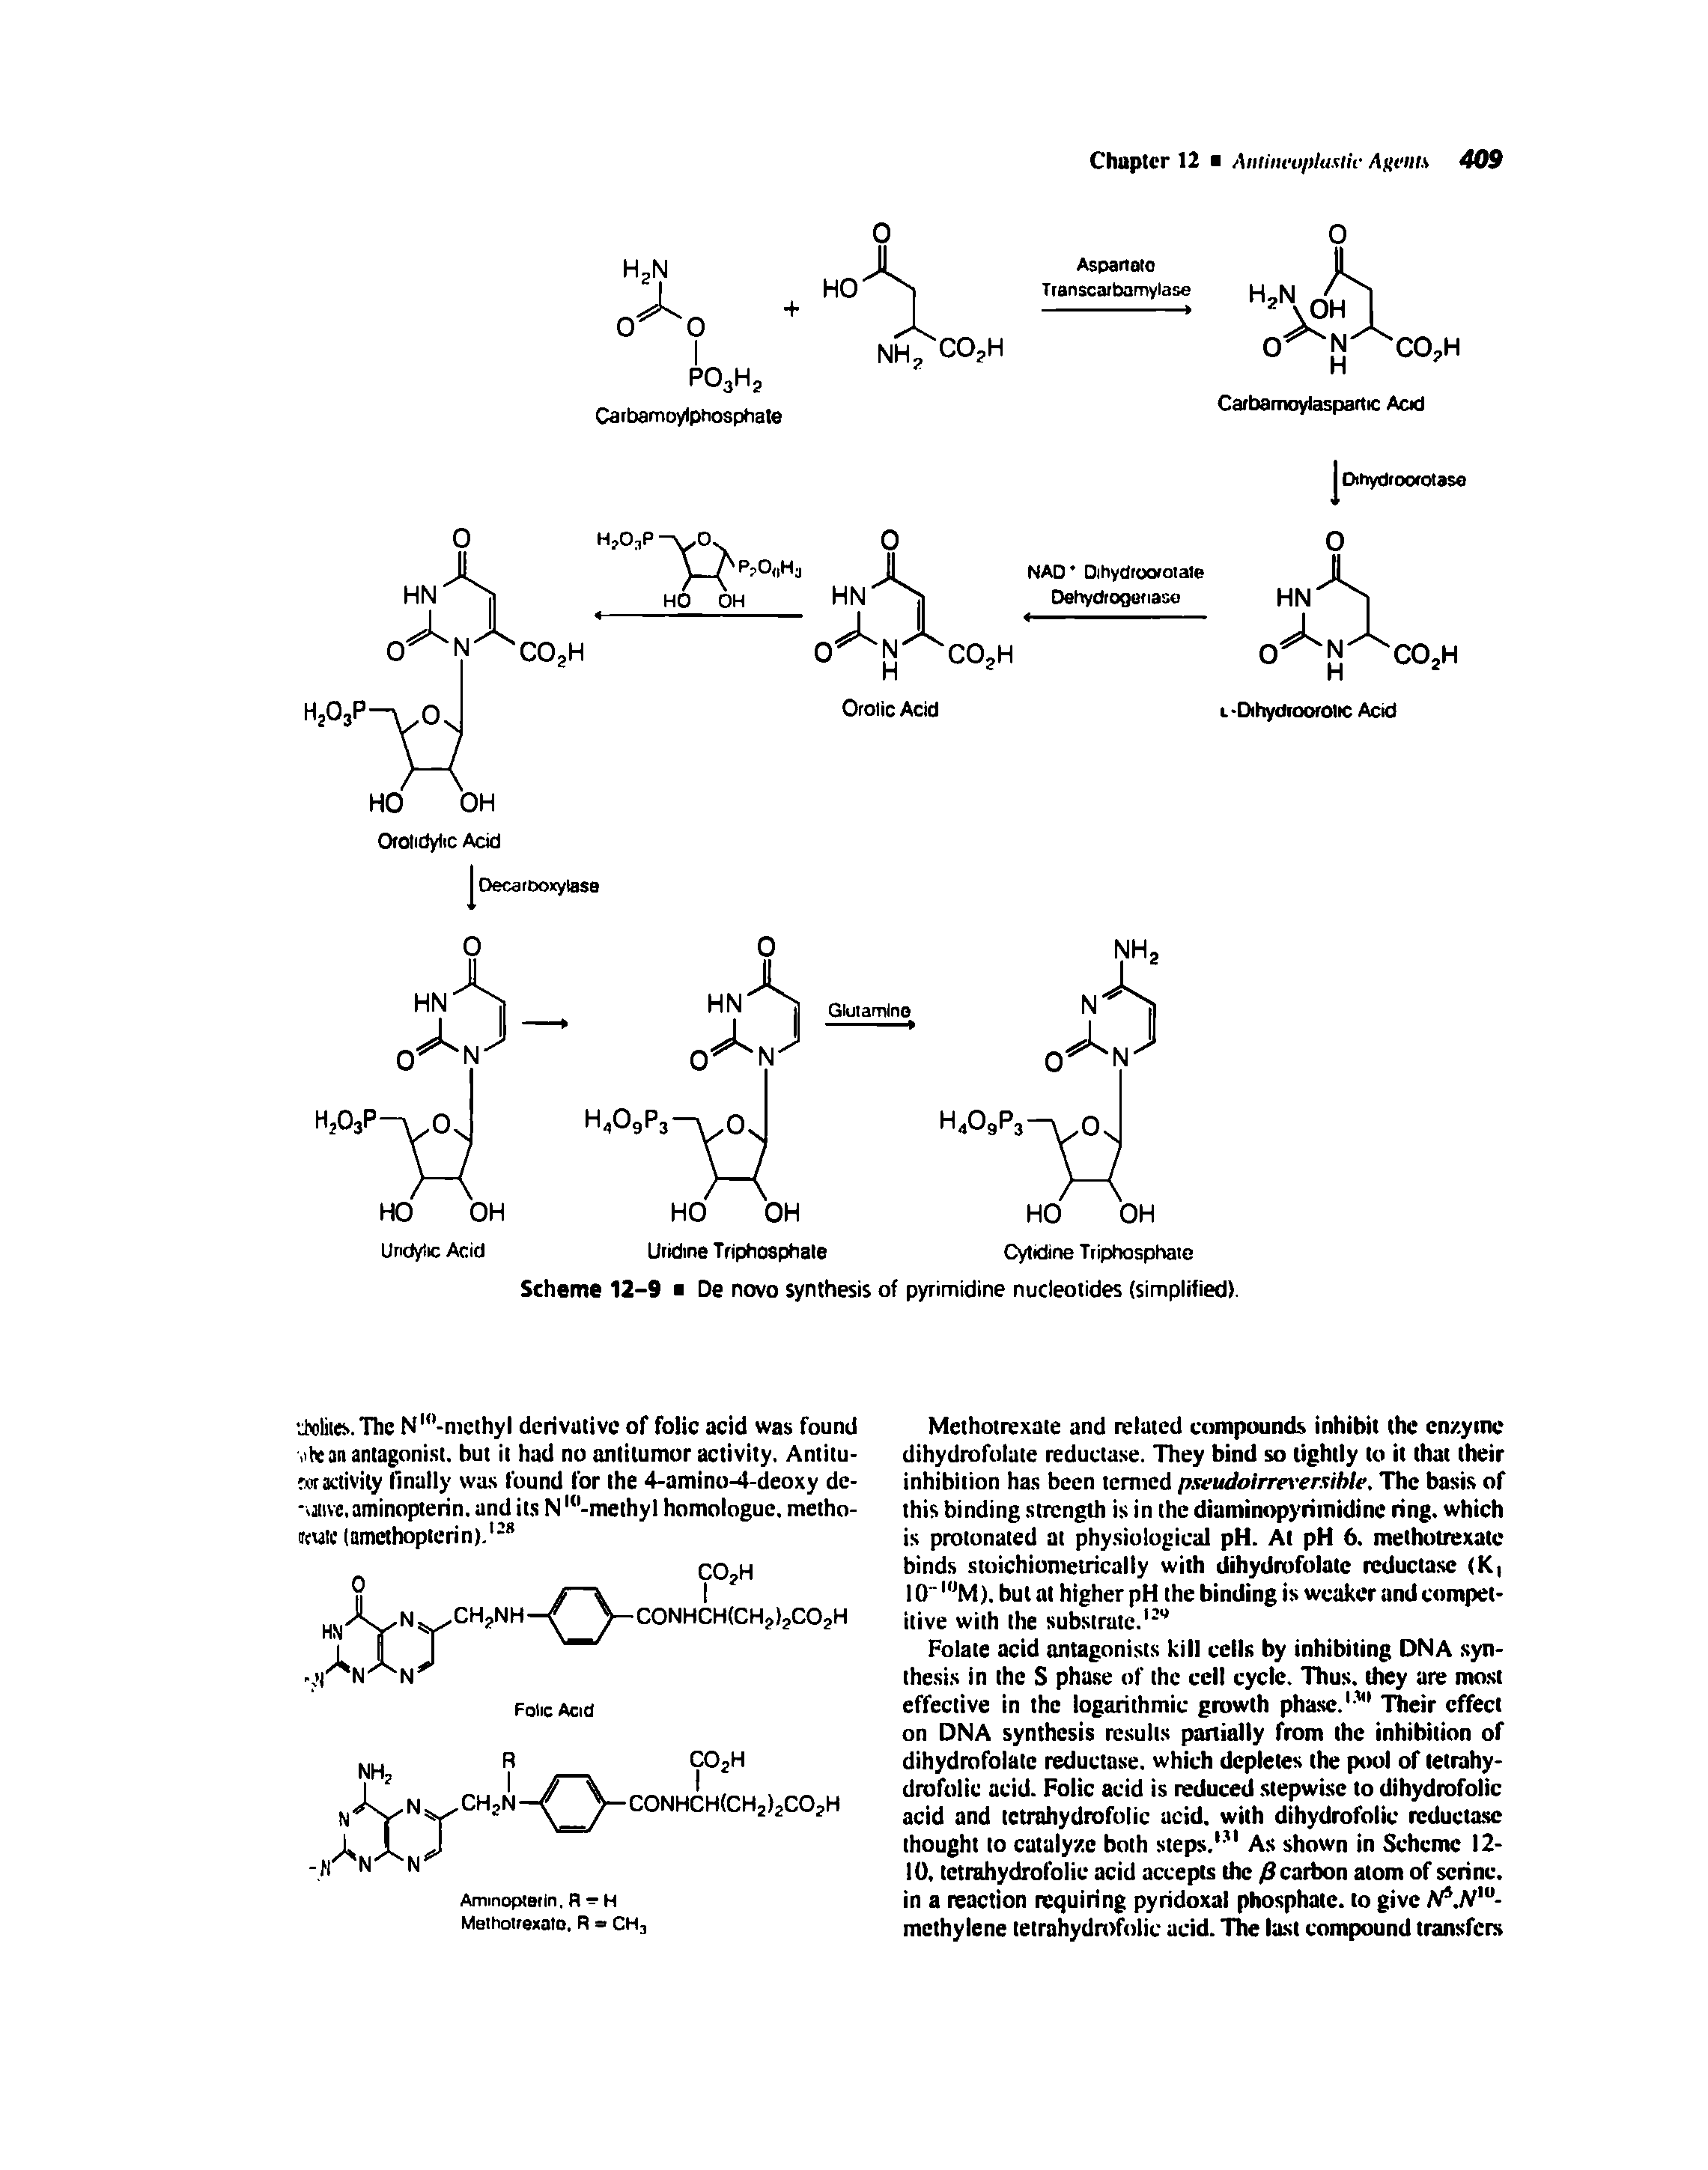 Scheme 12-9 De novo synthesis of pyrimidine nucleotides (simplified).